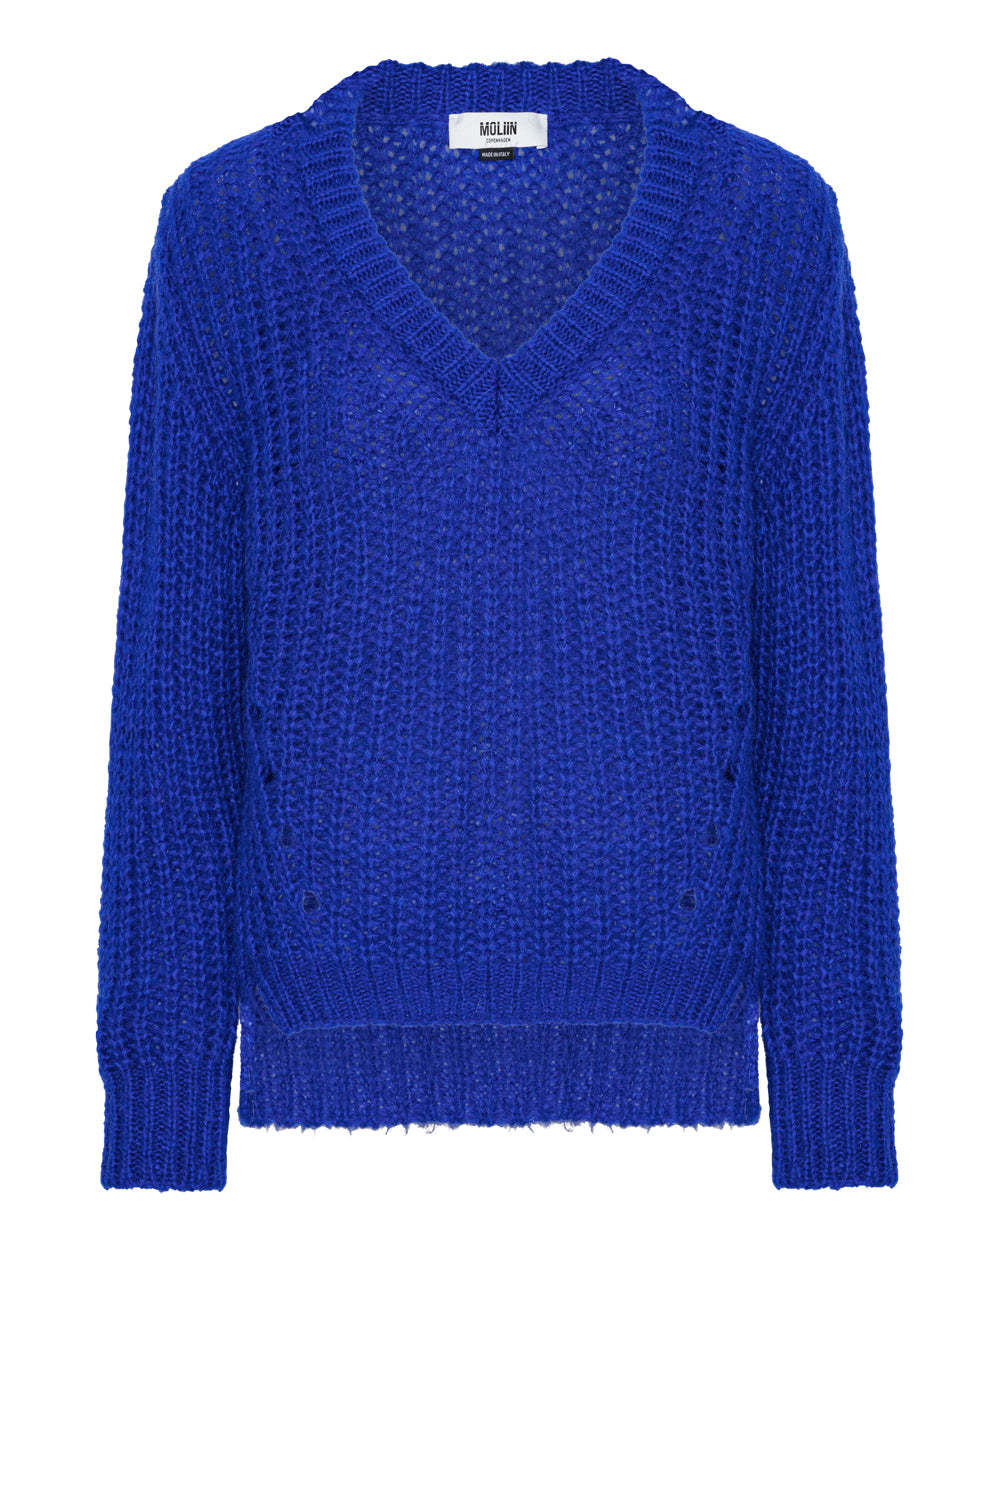 Moliin Knitt Erica Clematis Blue €220